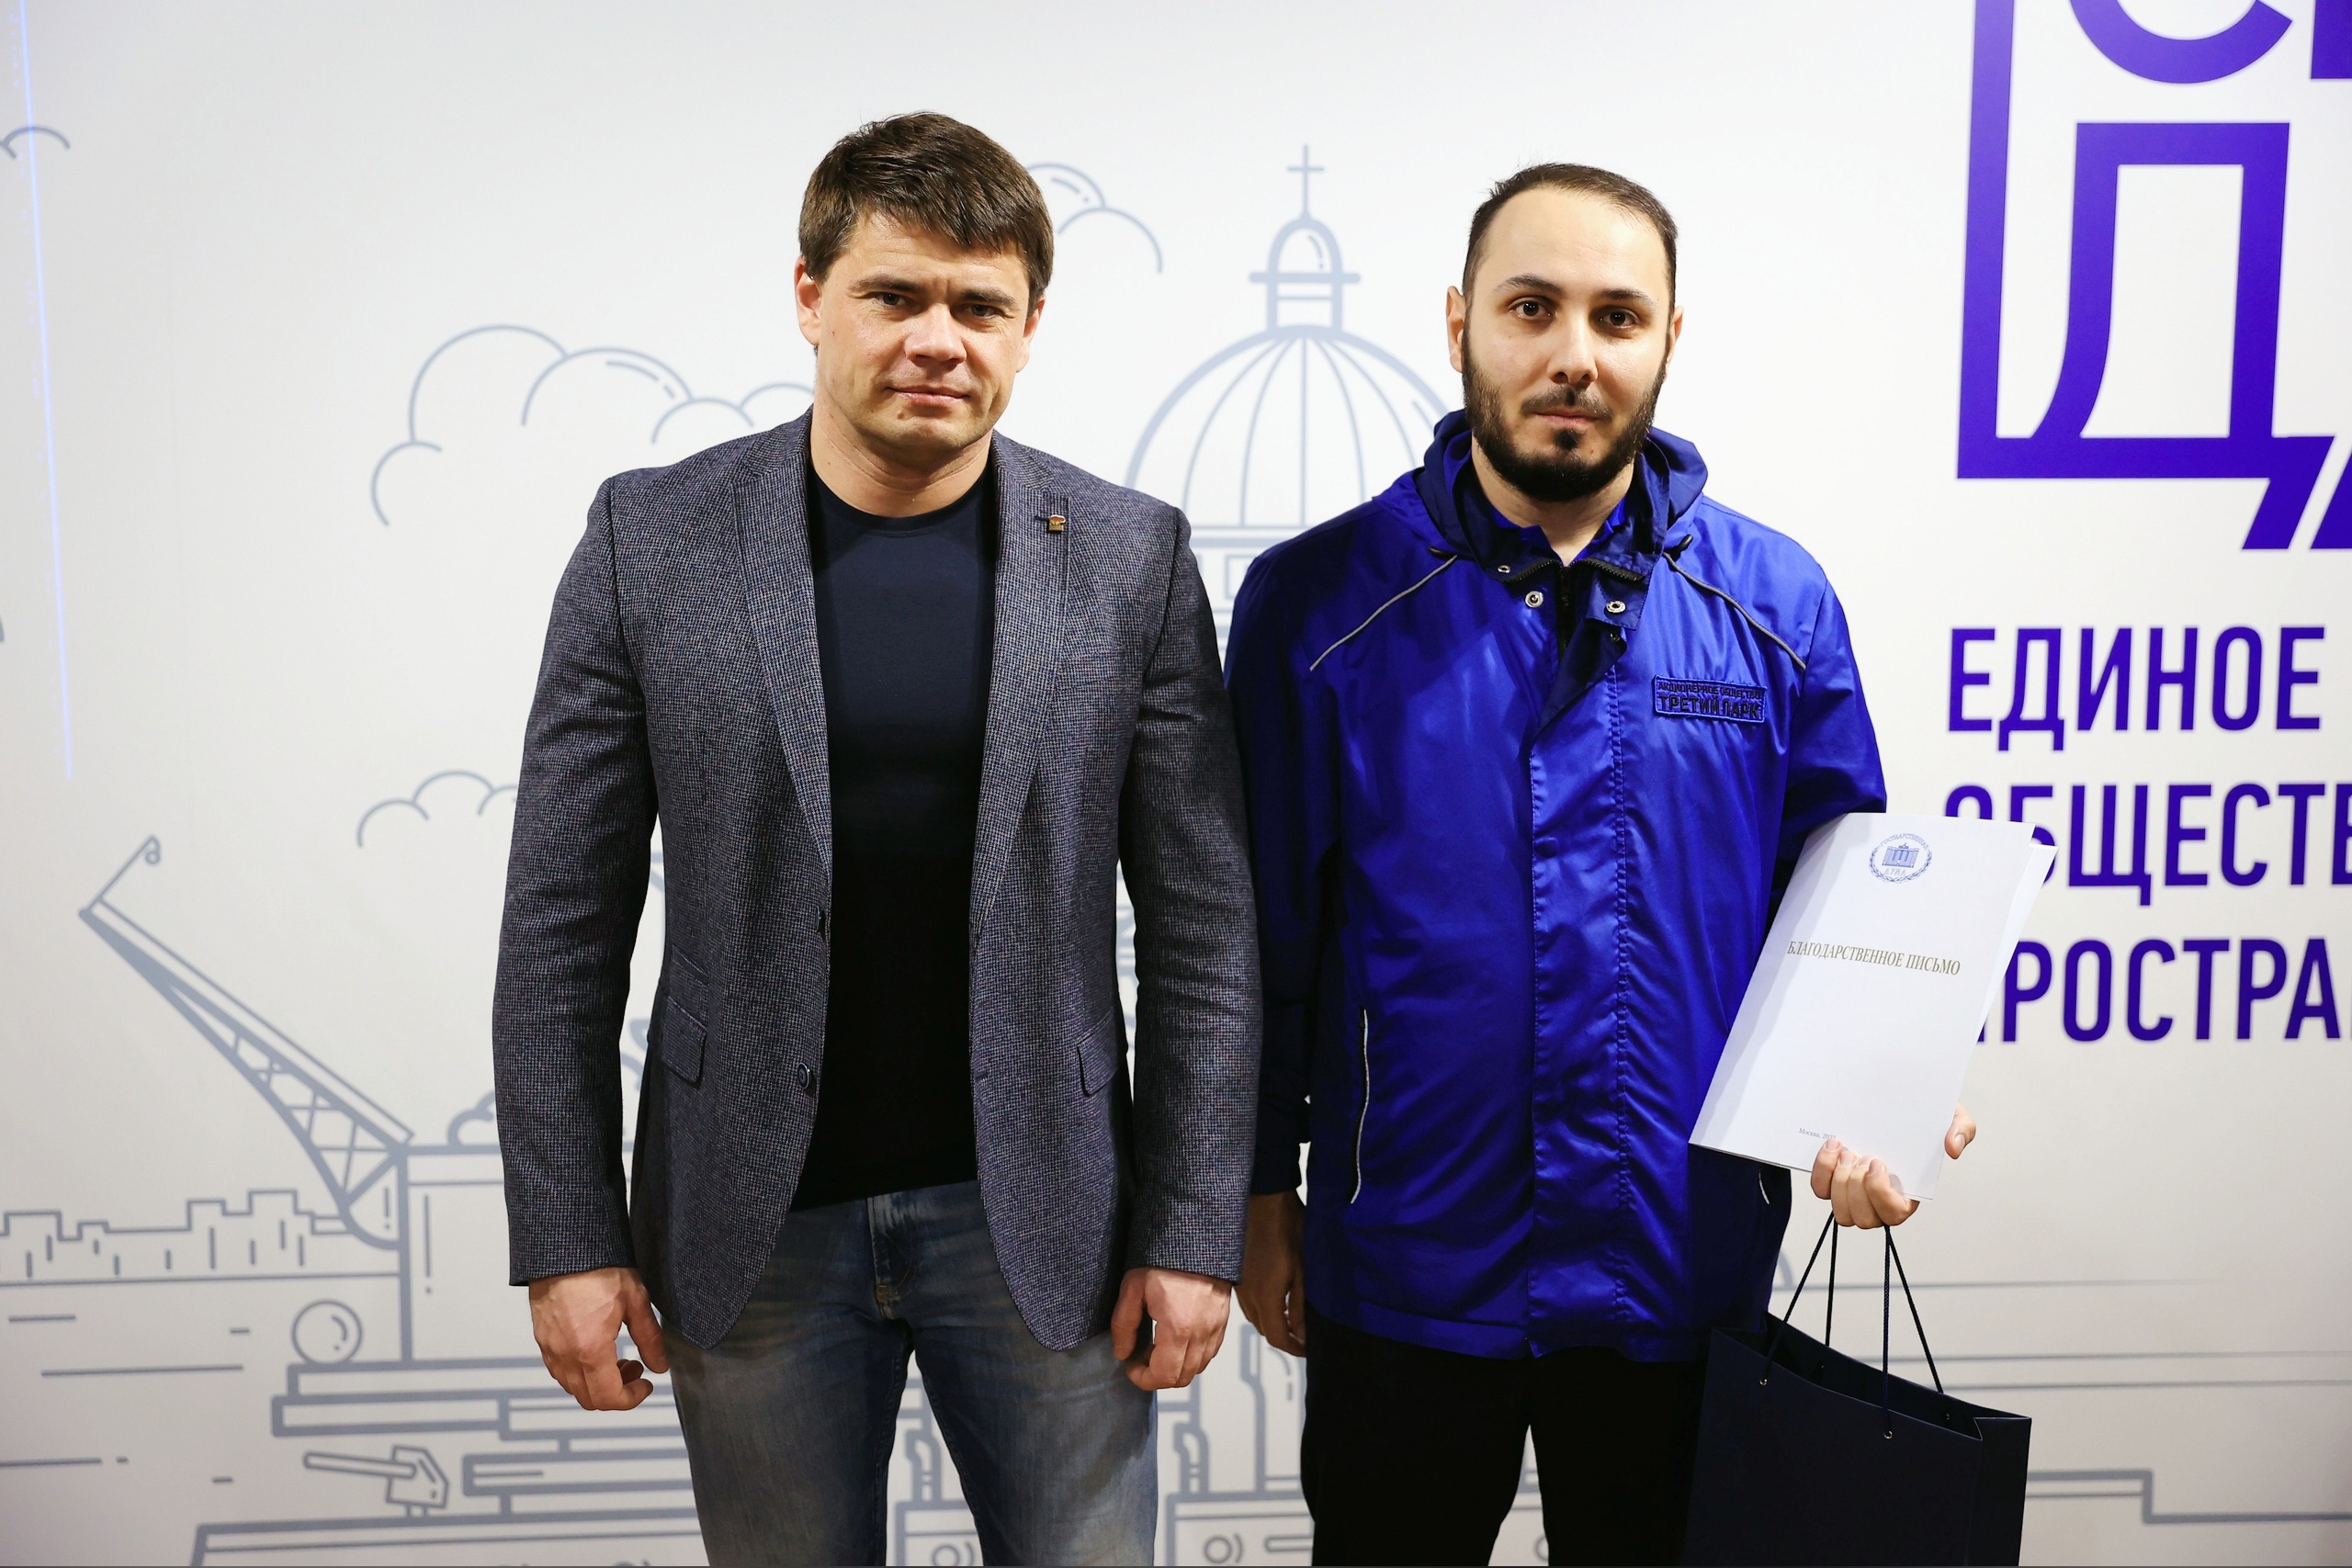 Депутат Госдумы Сергей Боярский наградил водителя Третьего Парка, спасшего жизнь человеку!